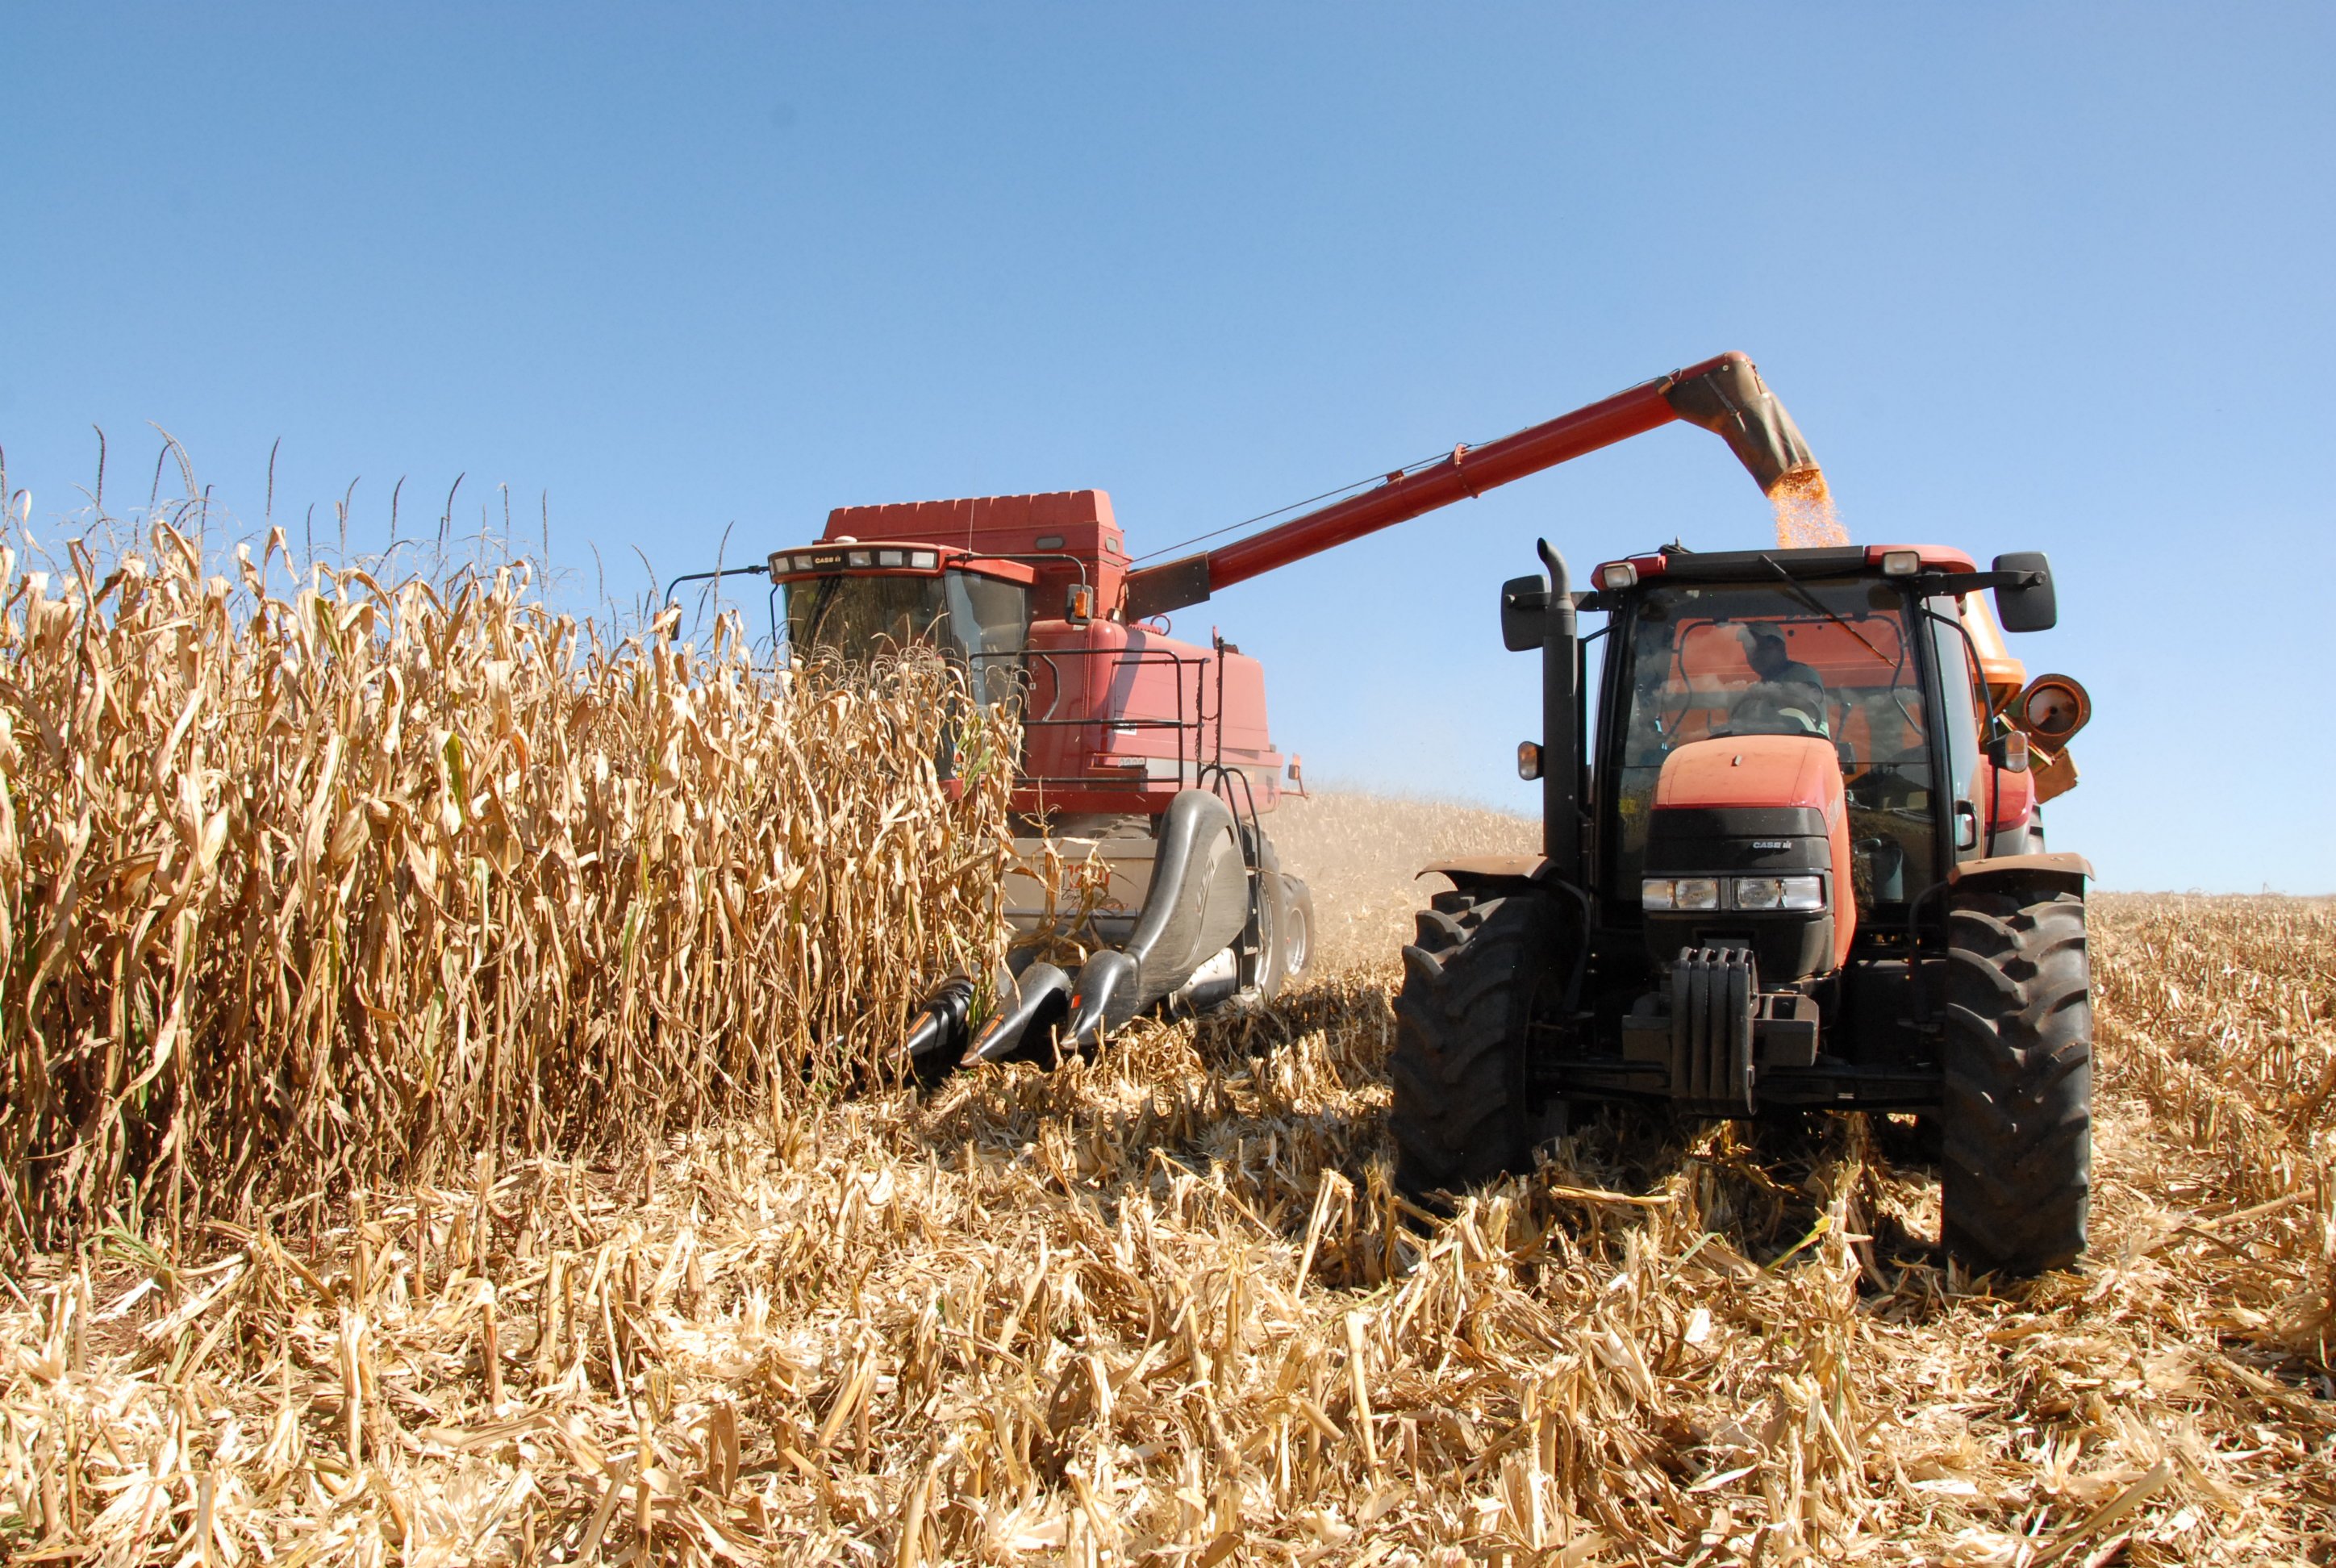 O milho da primeira safra teve um bom desempenho, com uma colheita de 7,16 milhões de toneladas